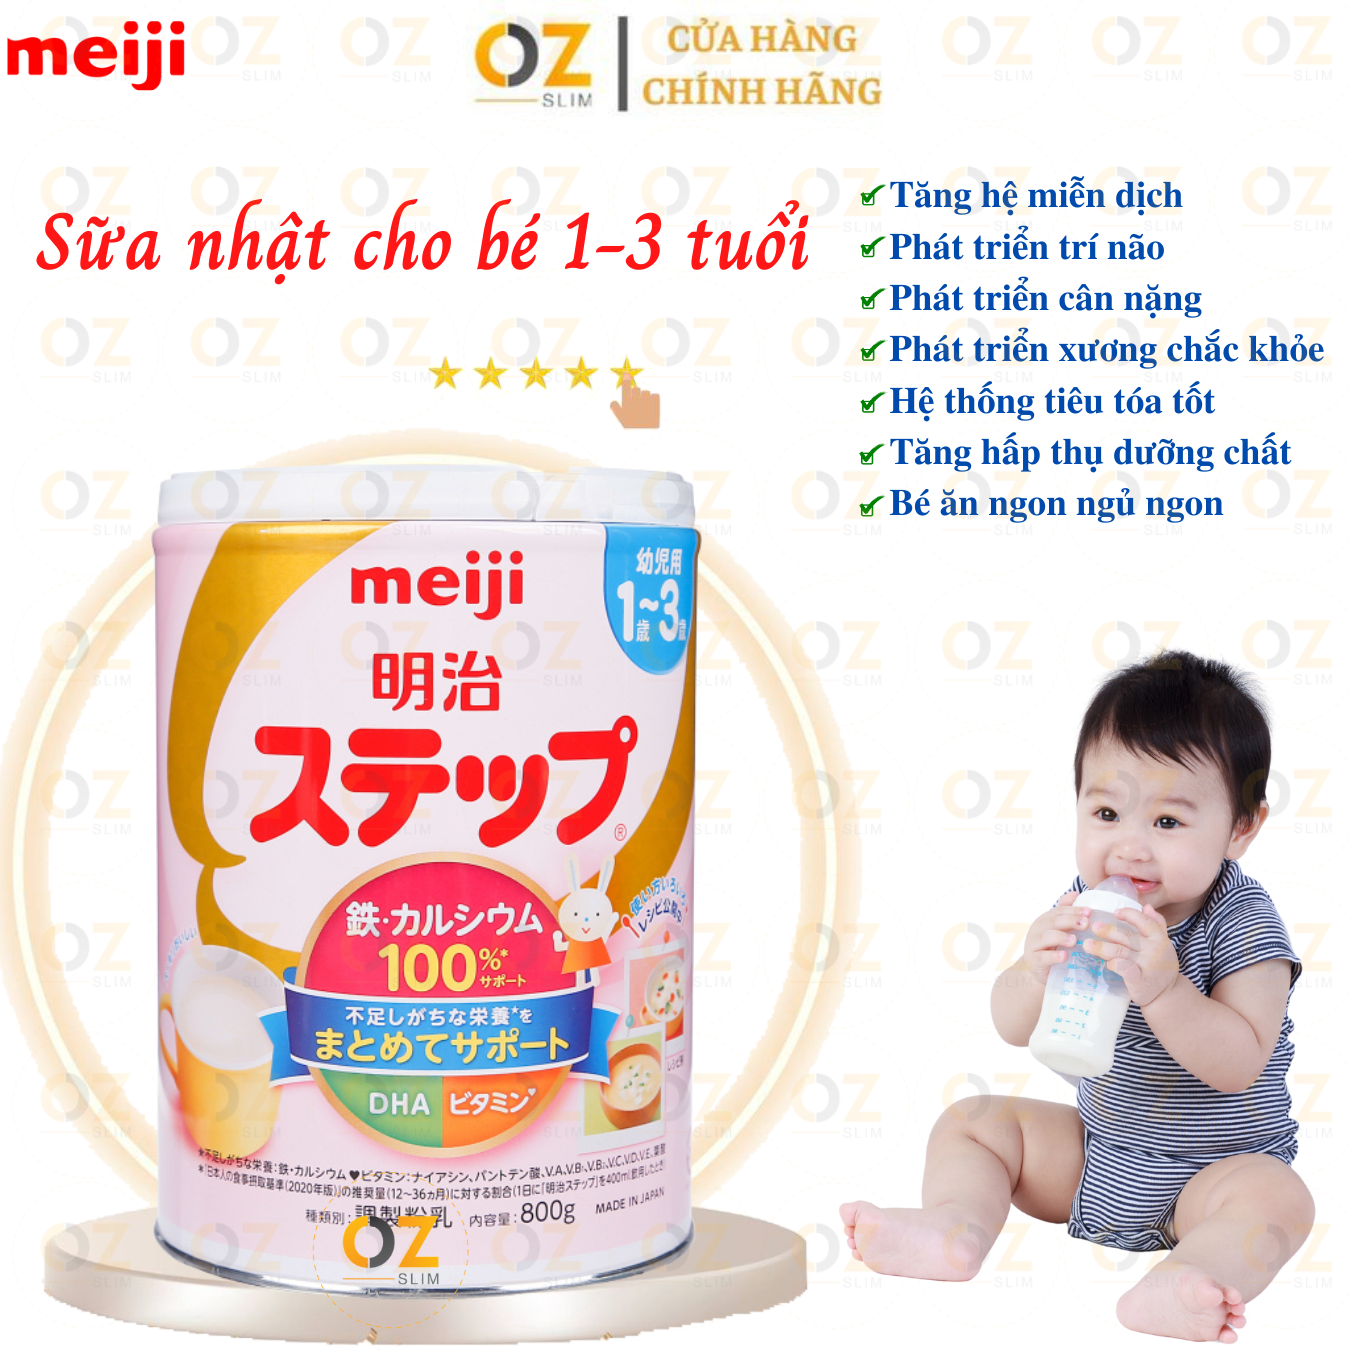 Sữa cho trẻ sơ sinh, trẻ nhỏ 0-36 tháng tuổi Meiji Nhật giàu dưỡng chất kèm DHA giúp phát triển cân đối chiều cao, cân nặng, trí não cho bé - OZ Slim Store